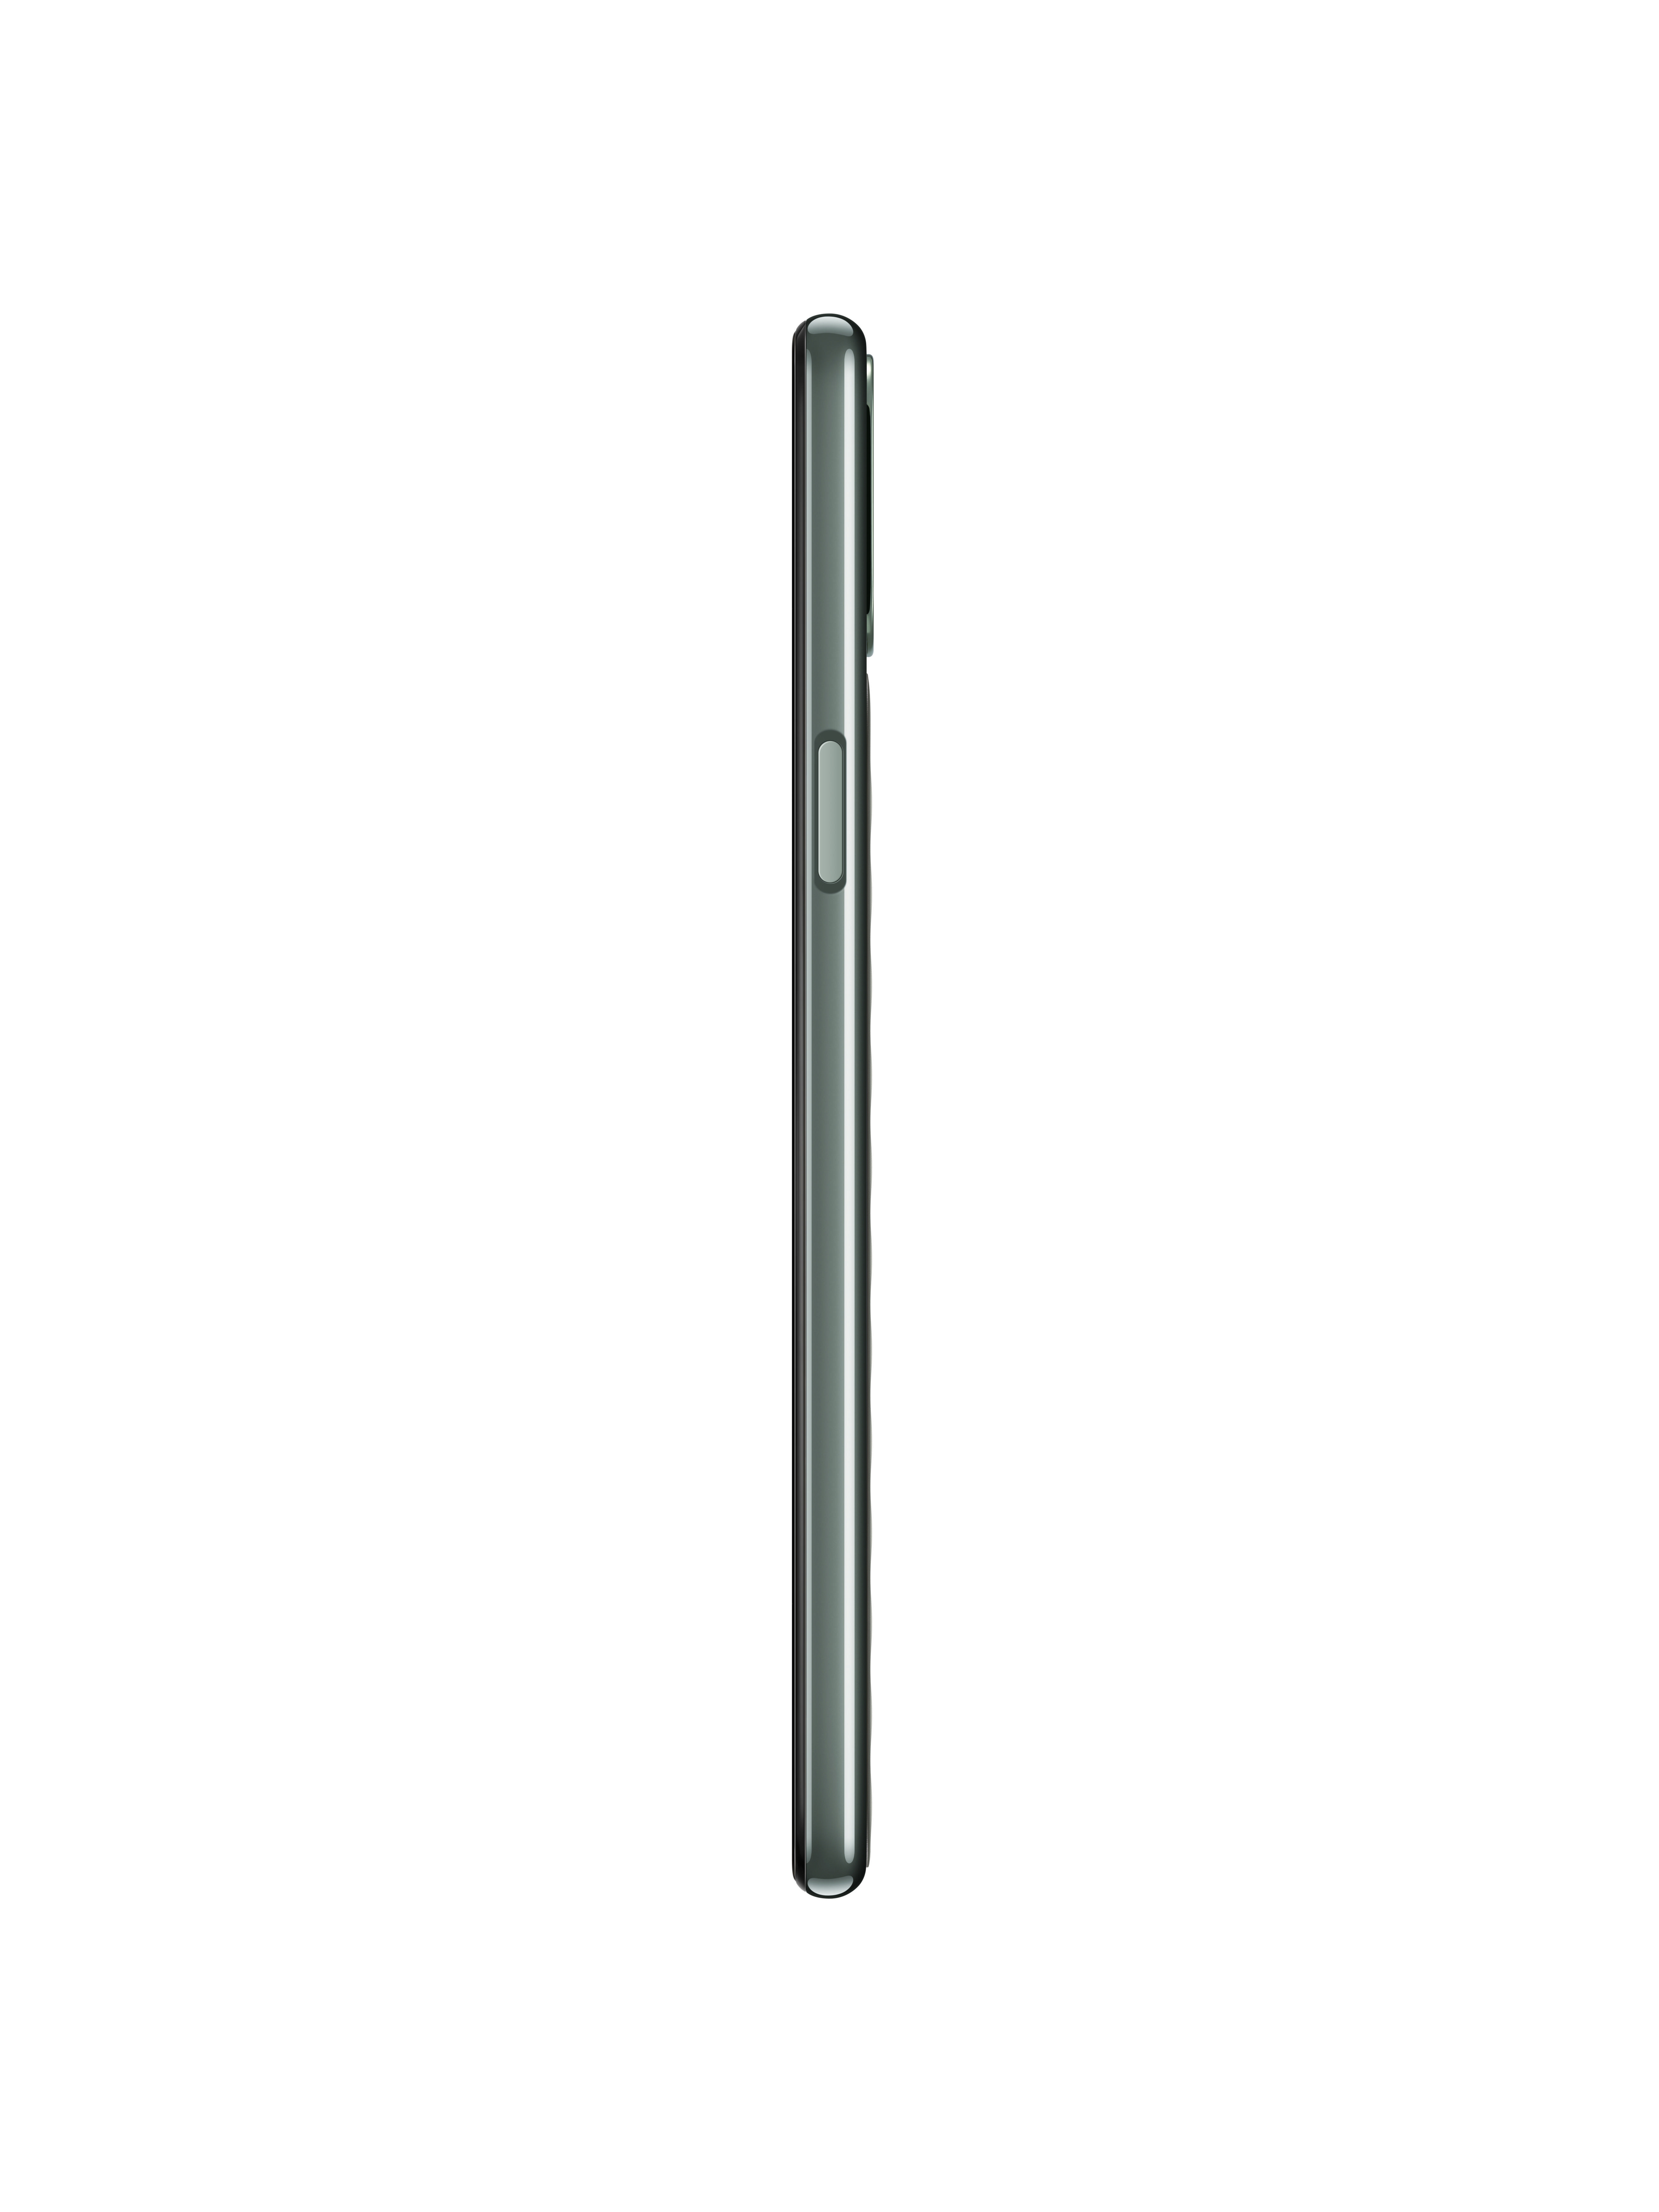 LG K42 64 GB Dual SIM Grün